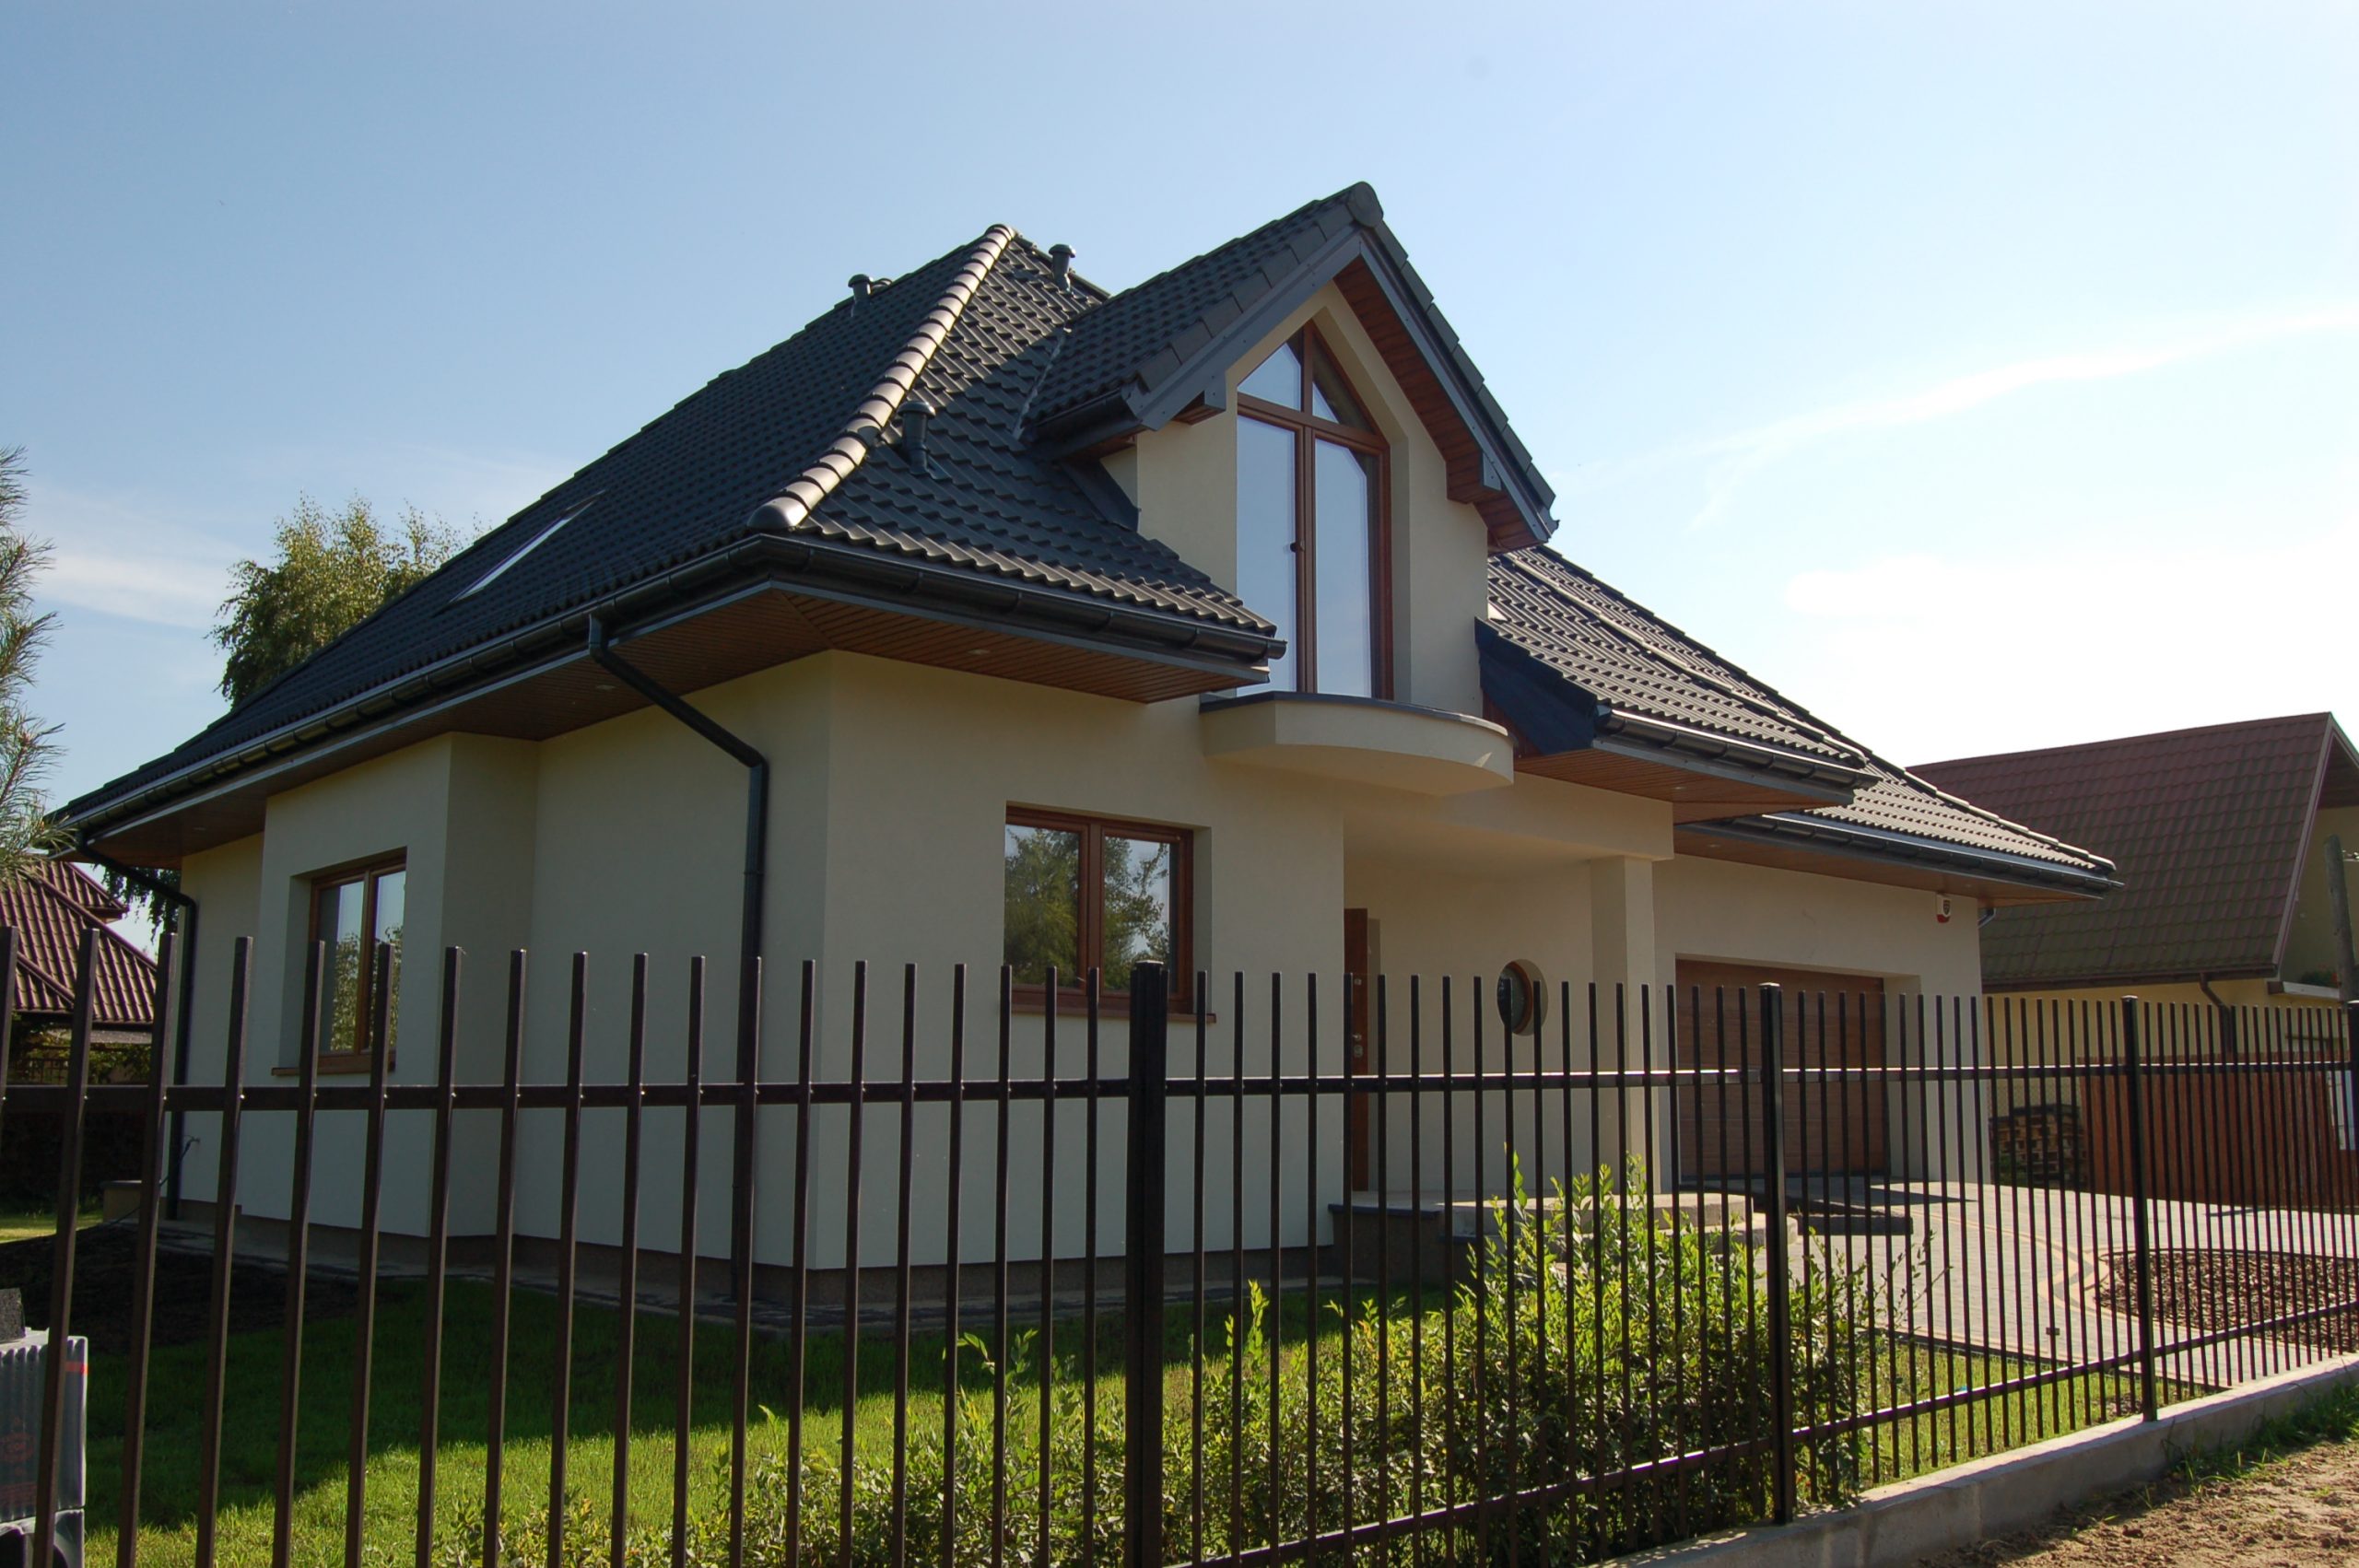 Cdevelopment.pl - dom jednorodzinny w warszawie stan deweloperski